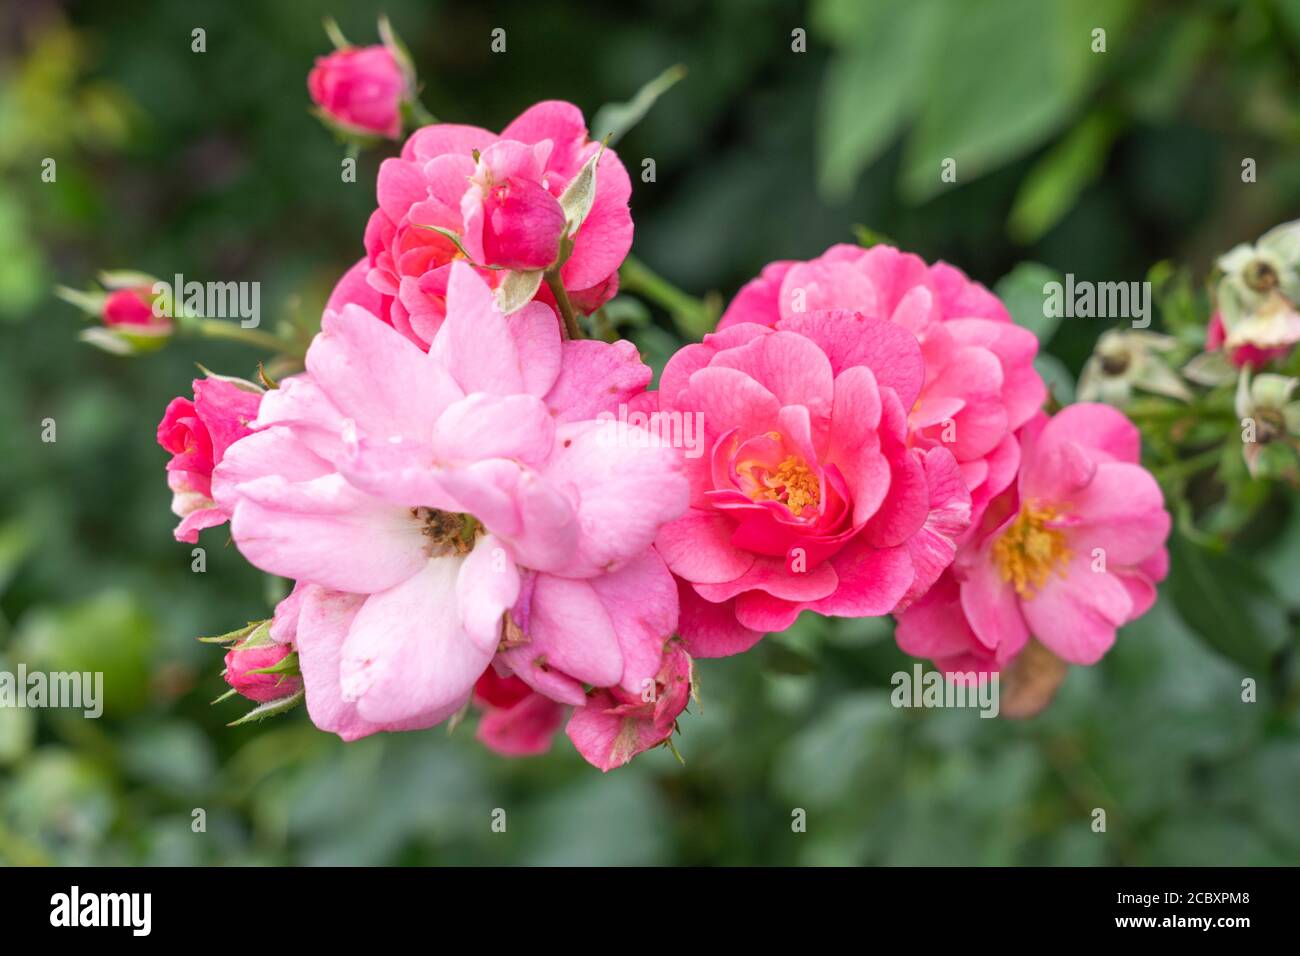 Rosa Gallica Conditorum - Old Rose 'Conditorum' un ibrido gallico con intensi petali rosa e colori giallo dorato. Agosto, bassa Austria, Europa Foto Stock